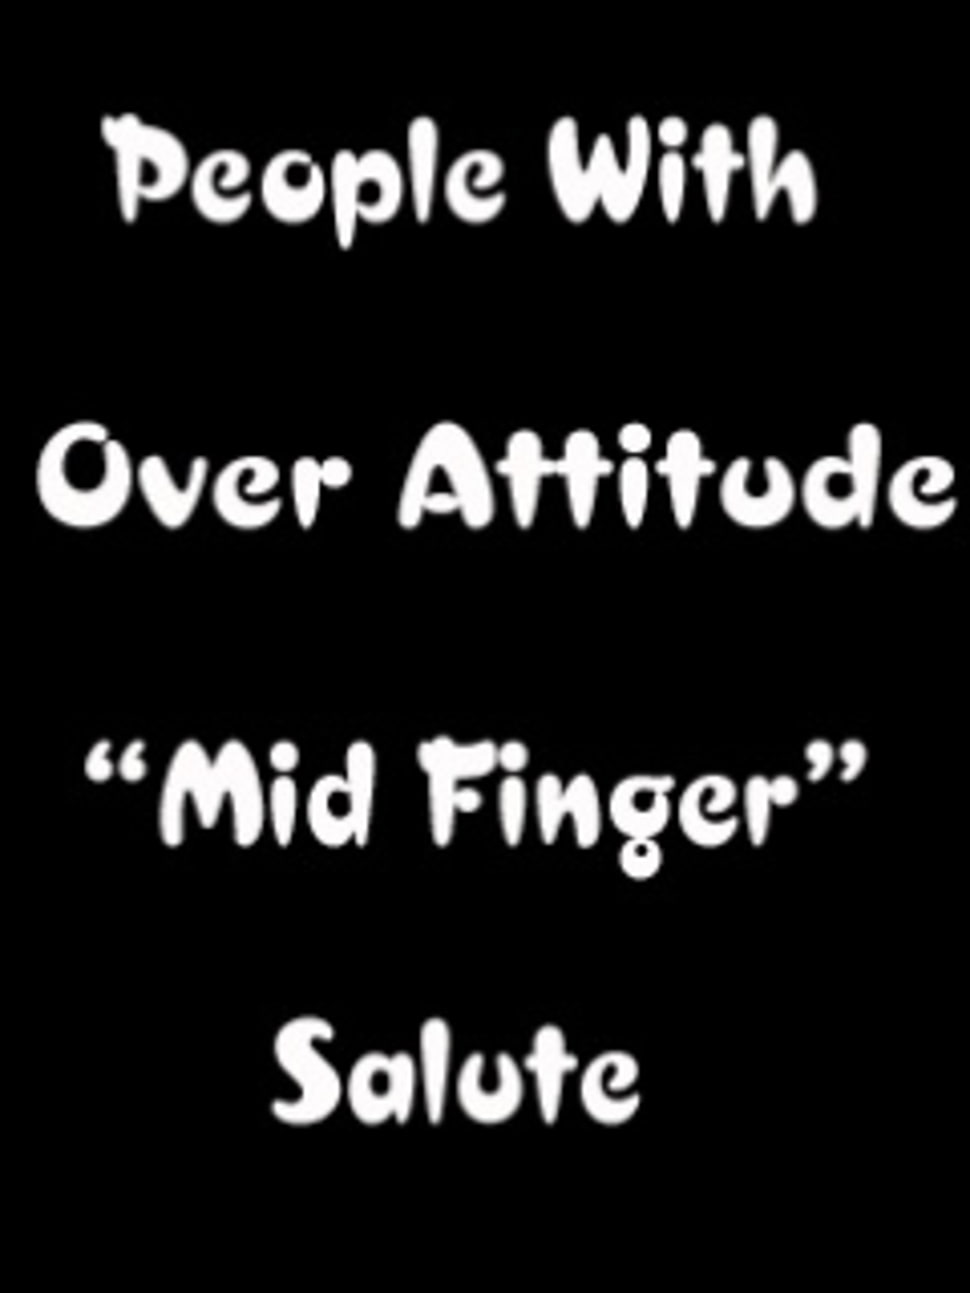 Over Attitude Mid Finger - Mid Finger - HD Wallpaper 